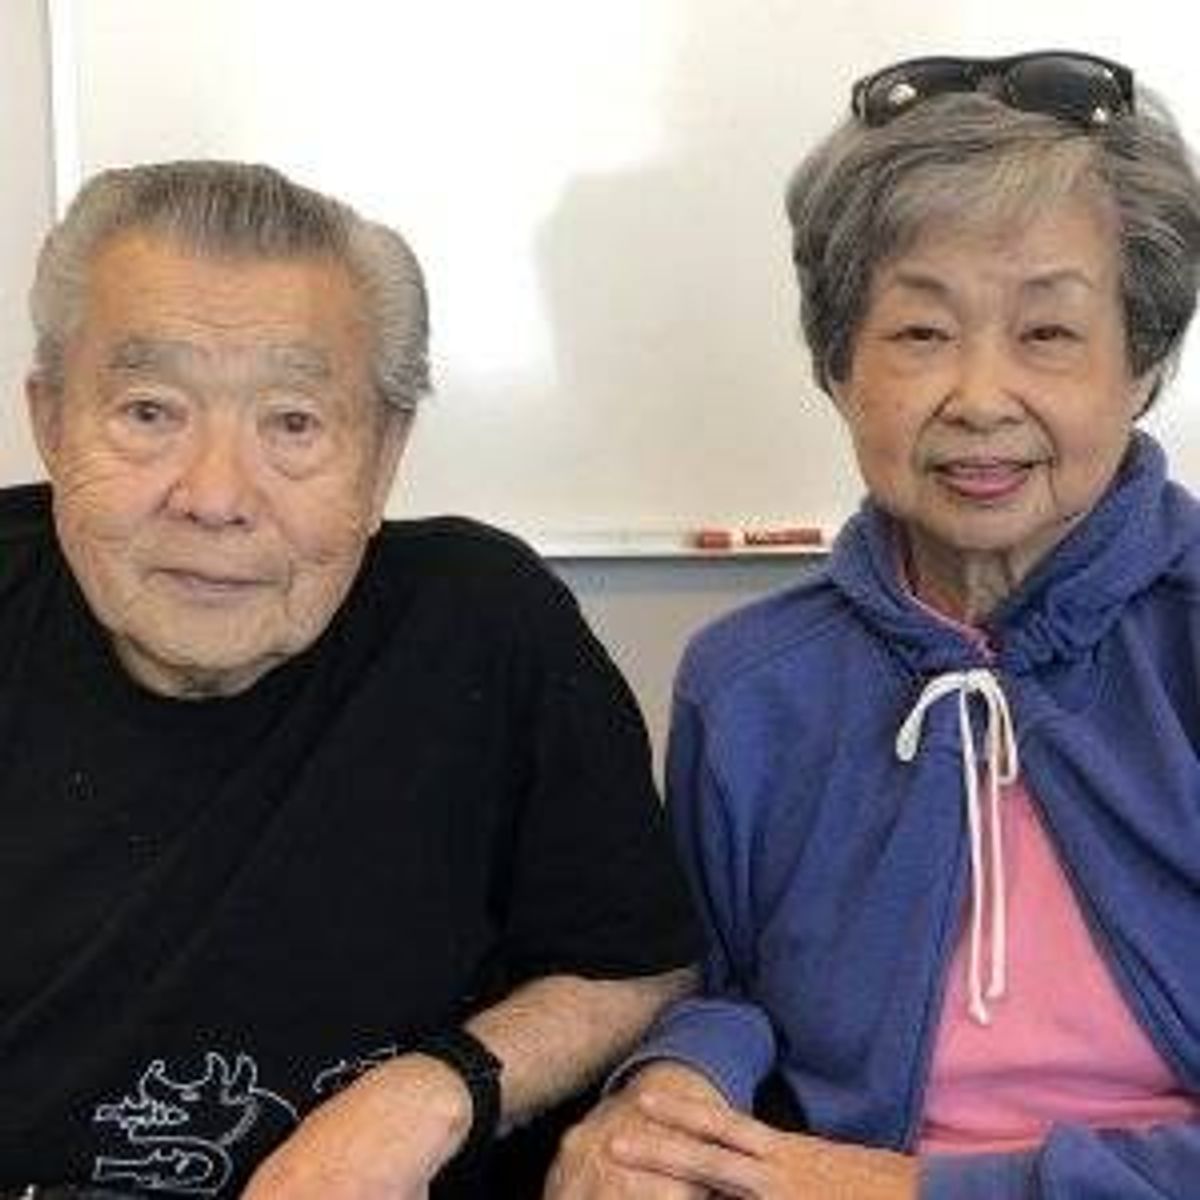 Ernie and Dorothy Zane, 92 and 86